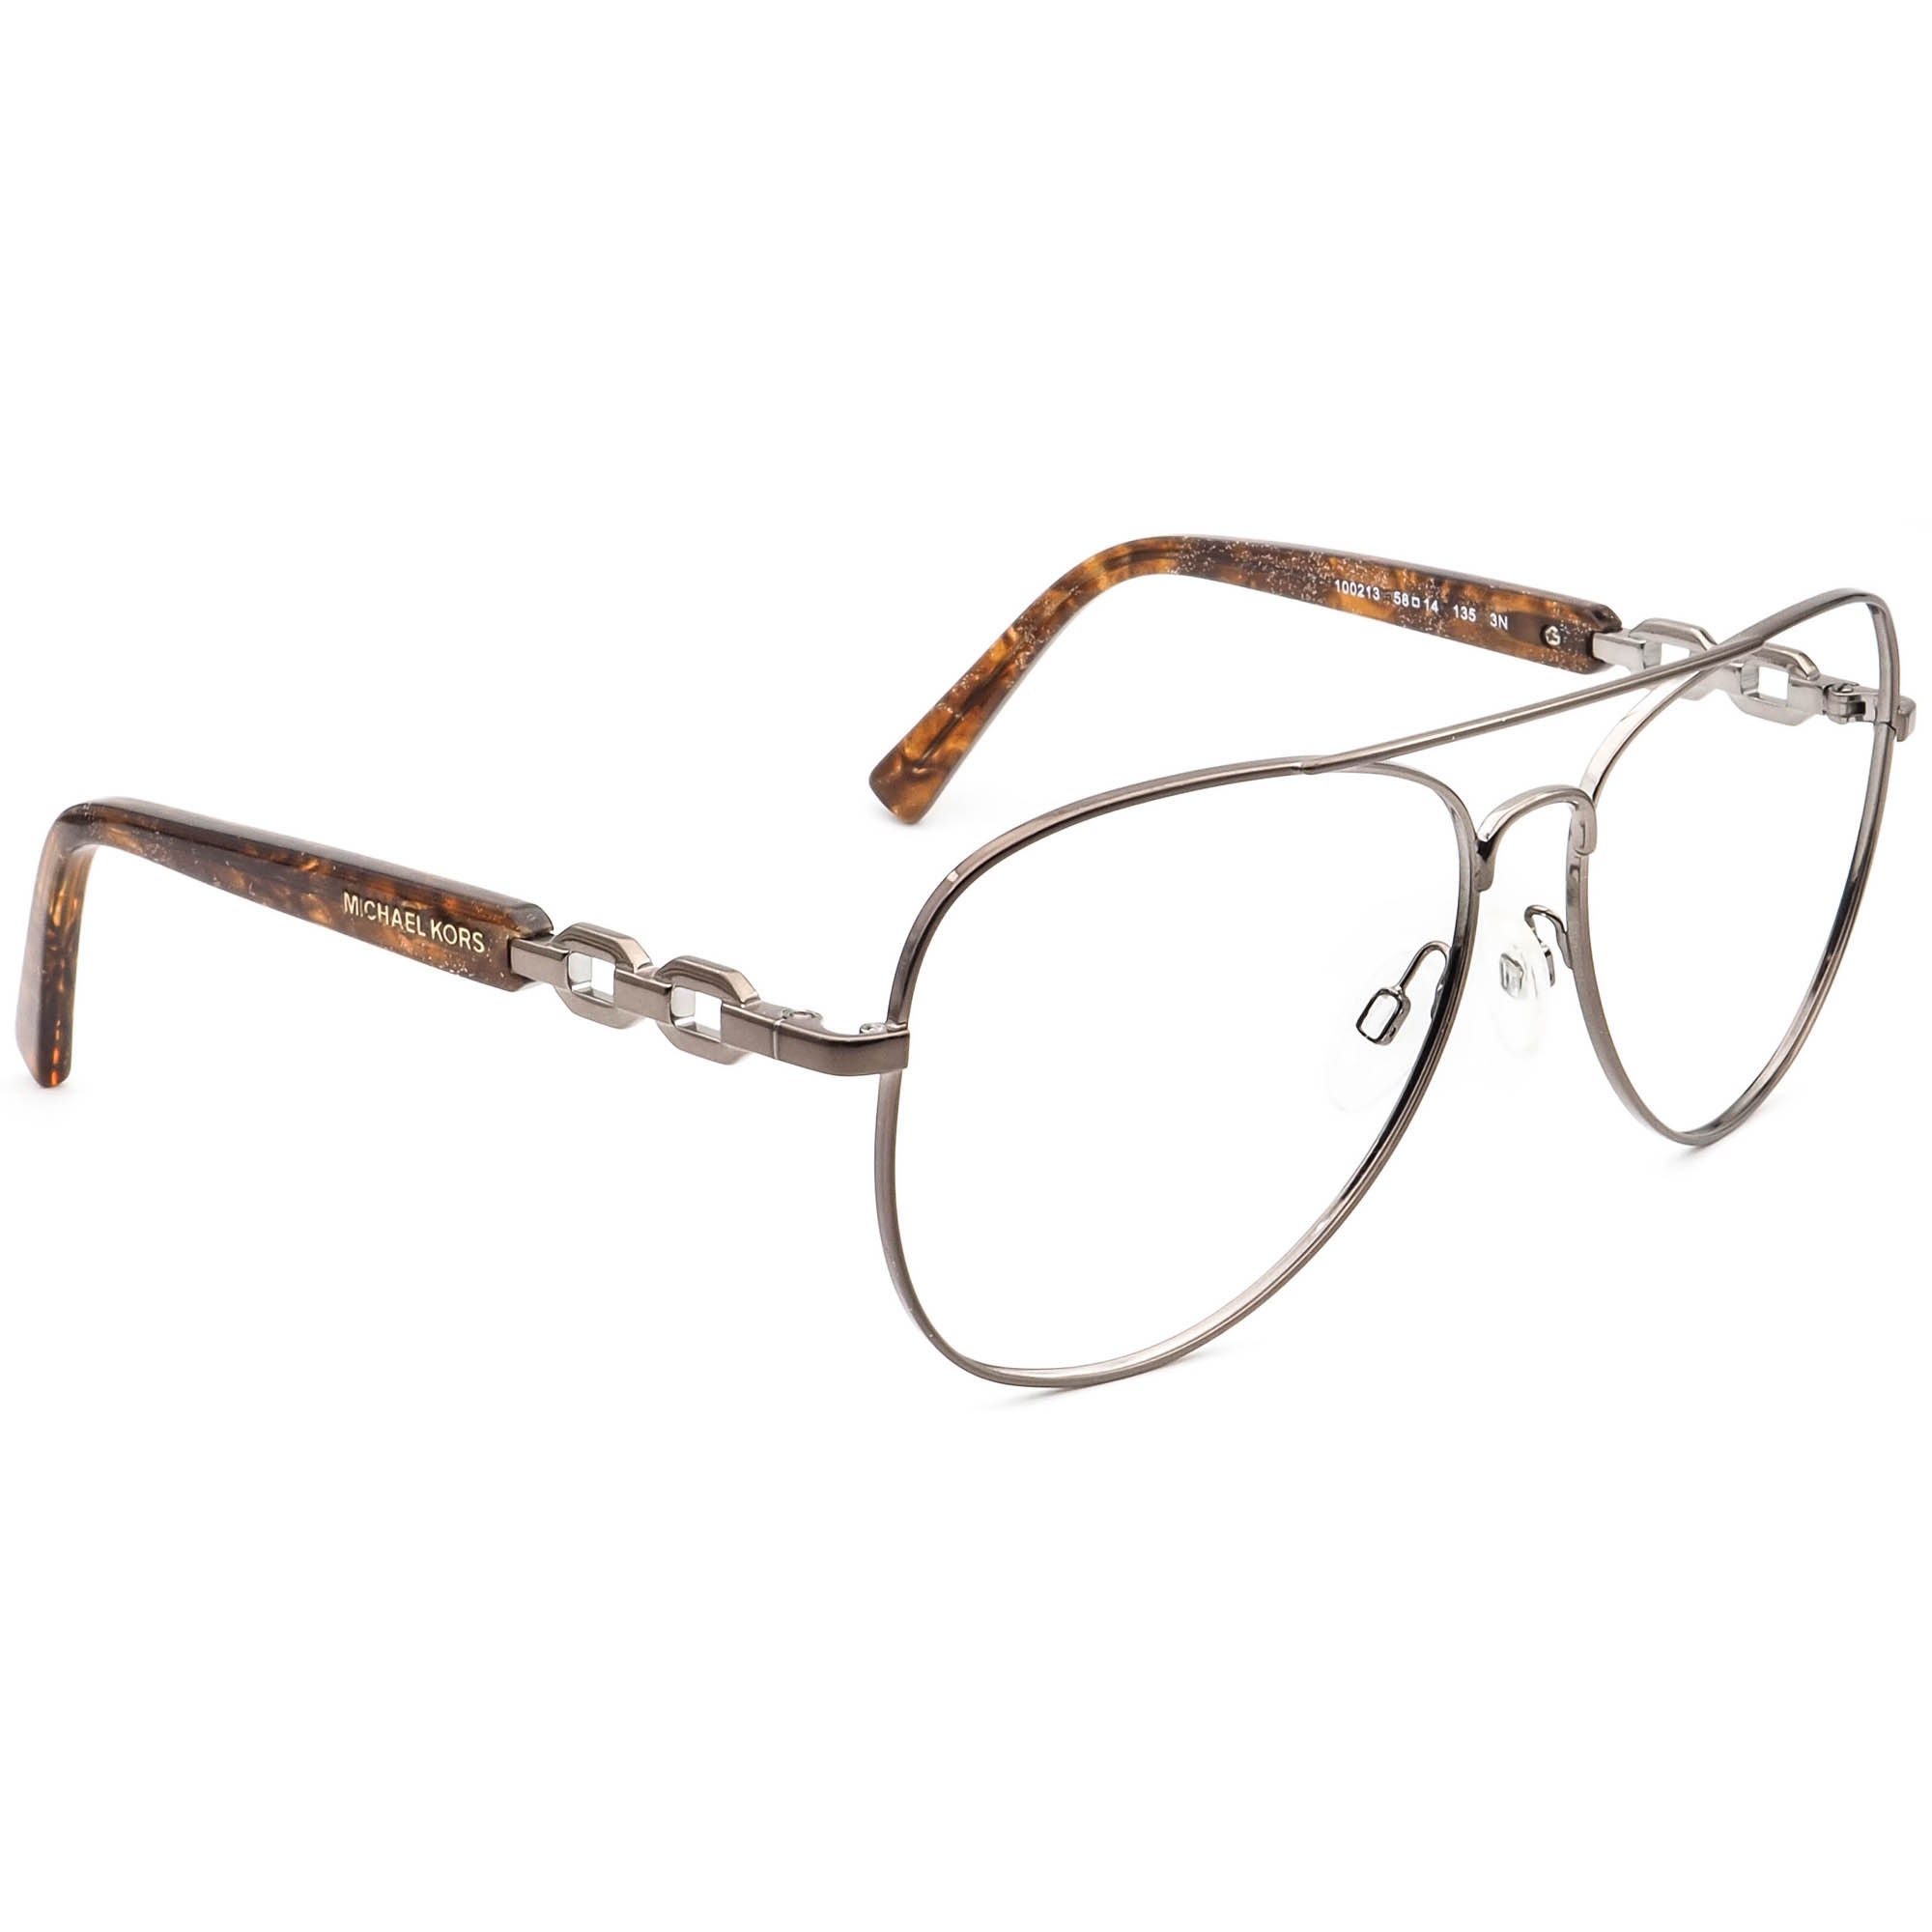 Michael Kors Sunglasses Frame Only MK 1003 fiji 100213 Brown  Etsy